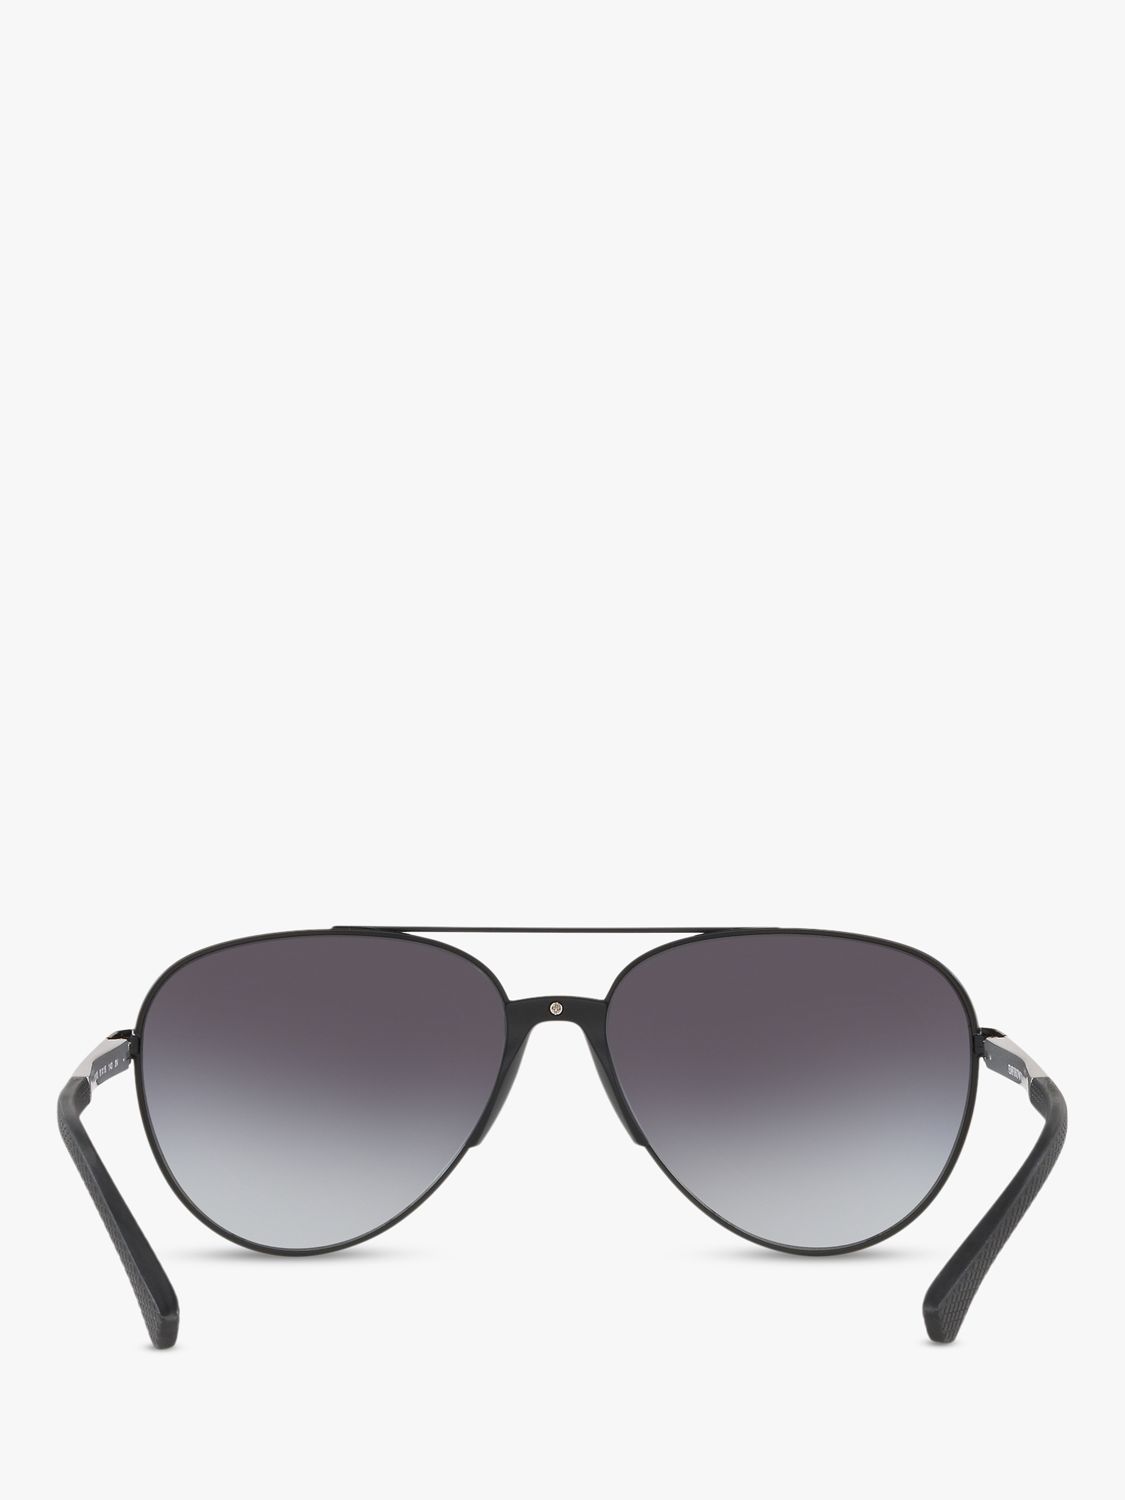 Emporio Armani EA2059 Men's Aviator Sunglasses, Matte Black/Grey ...